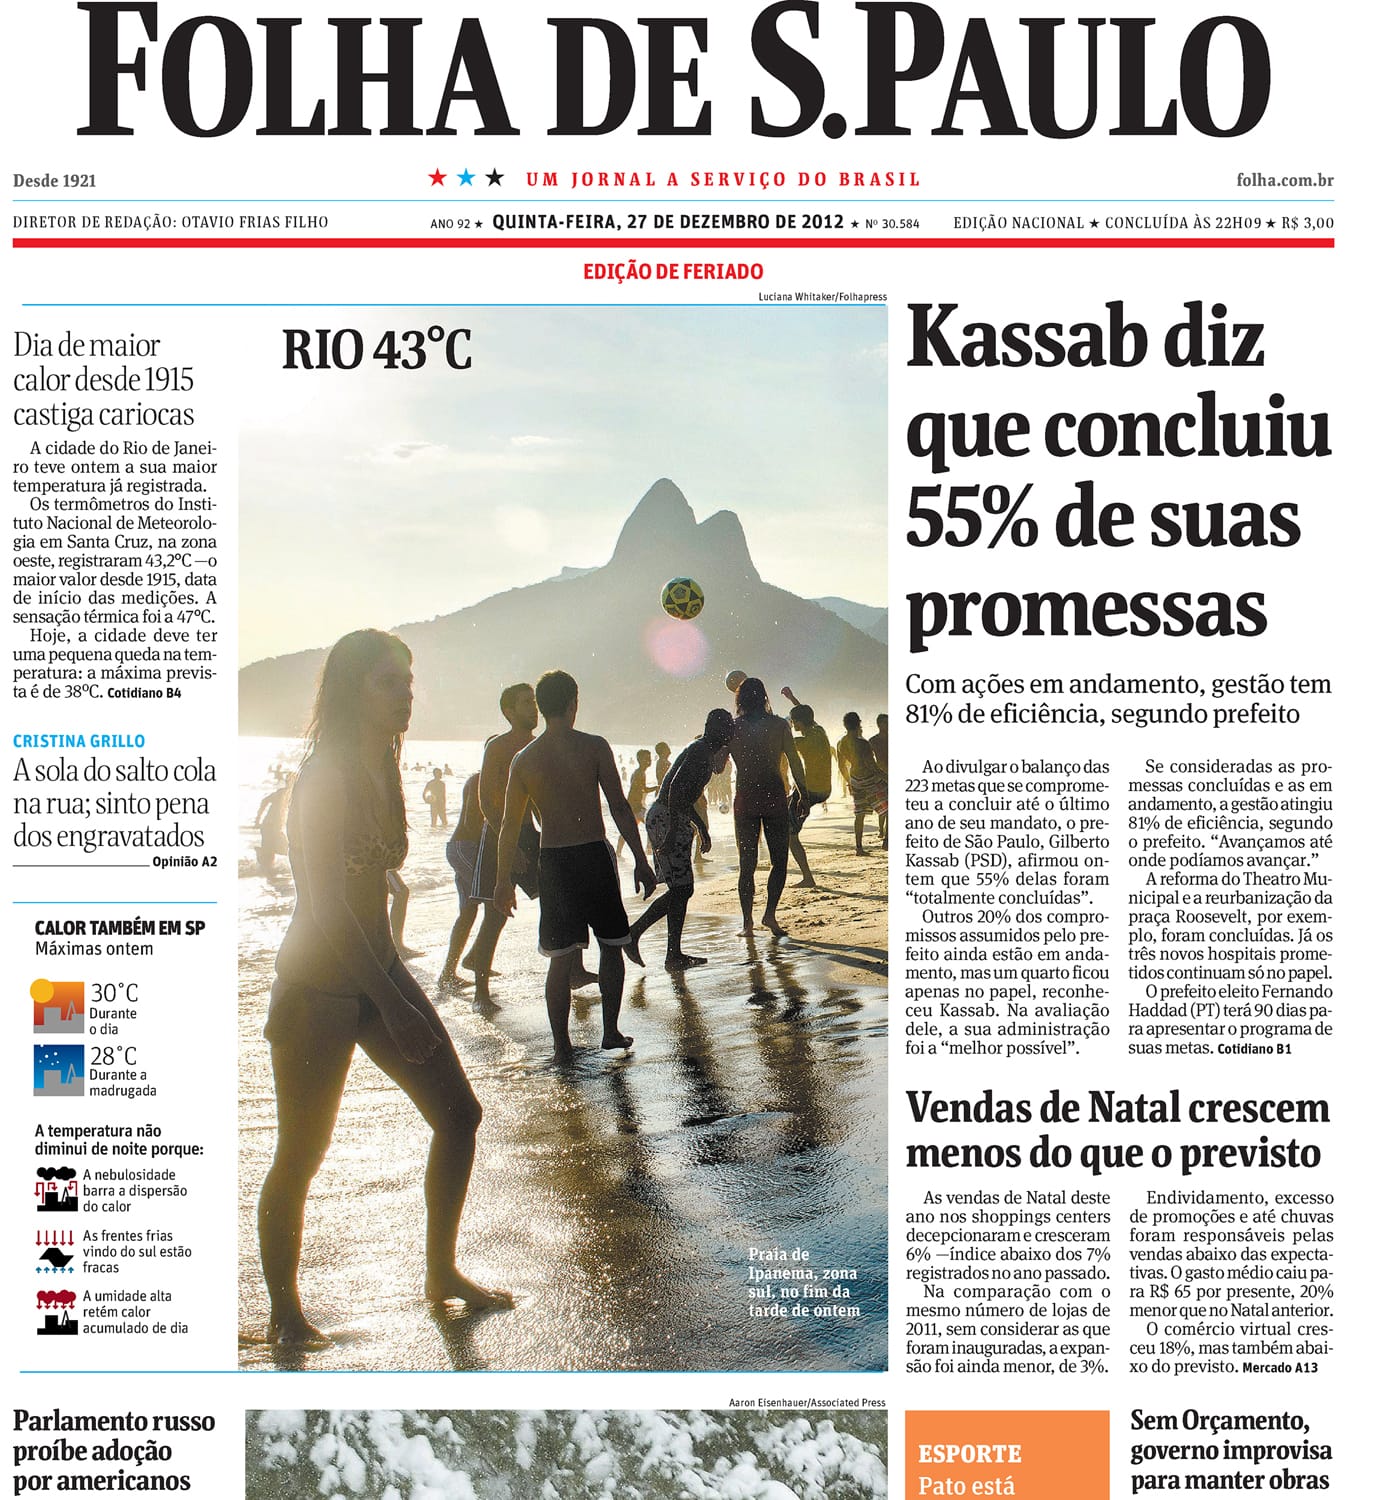 Folha de S. Paulo, Brazil